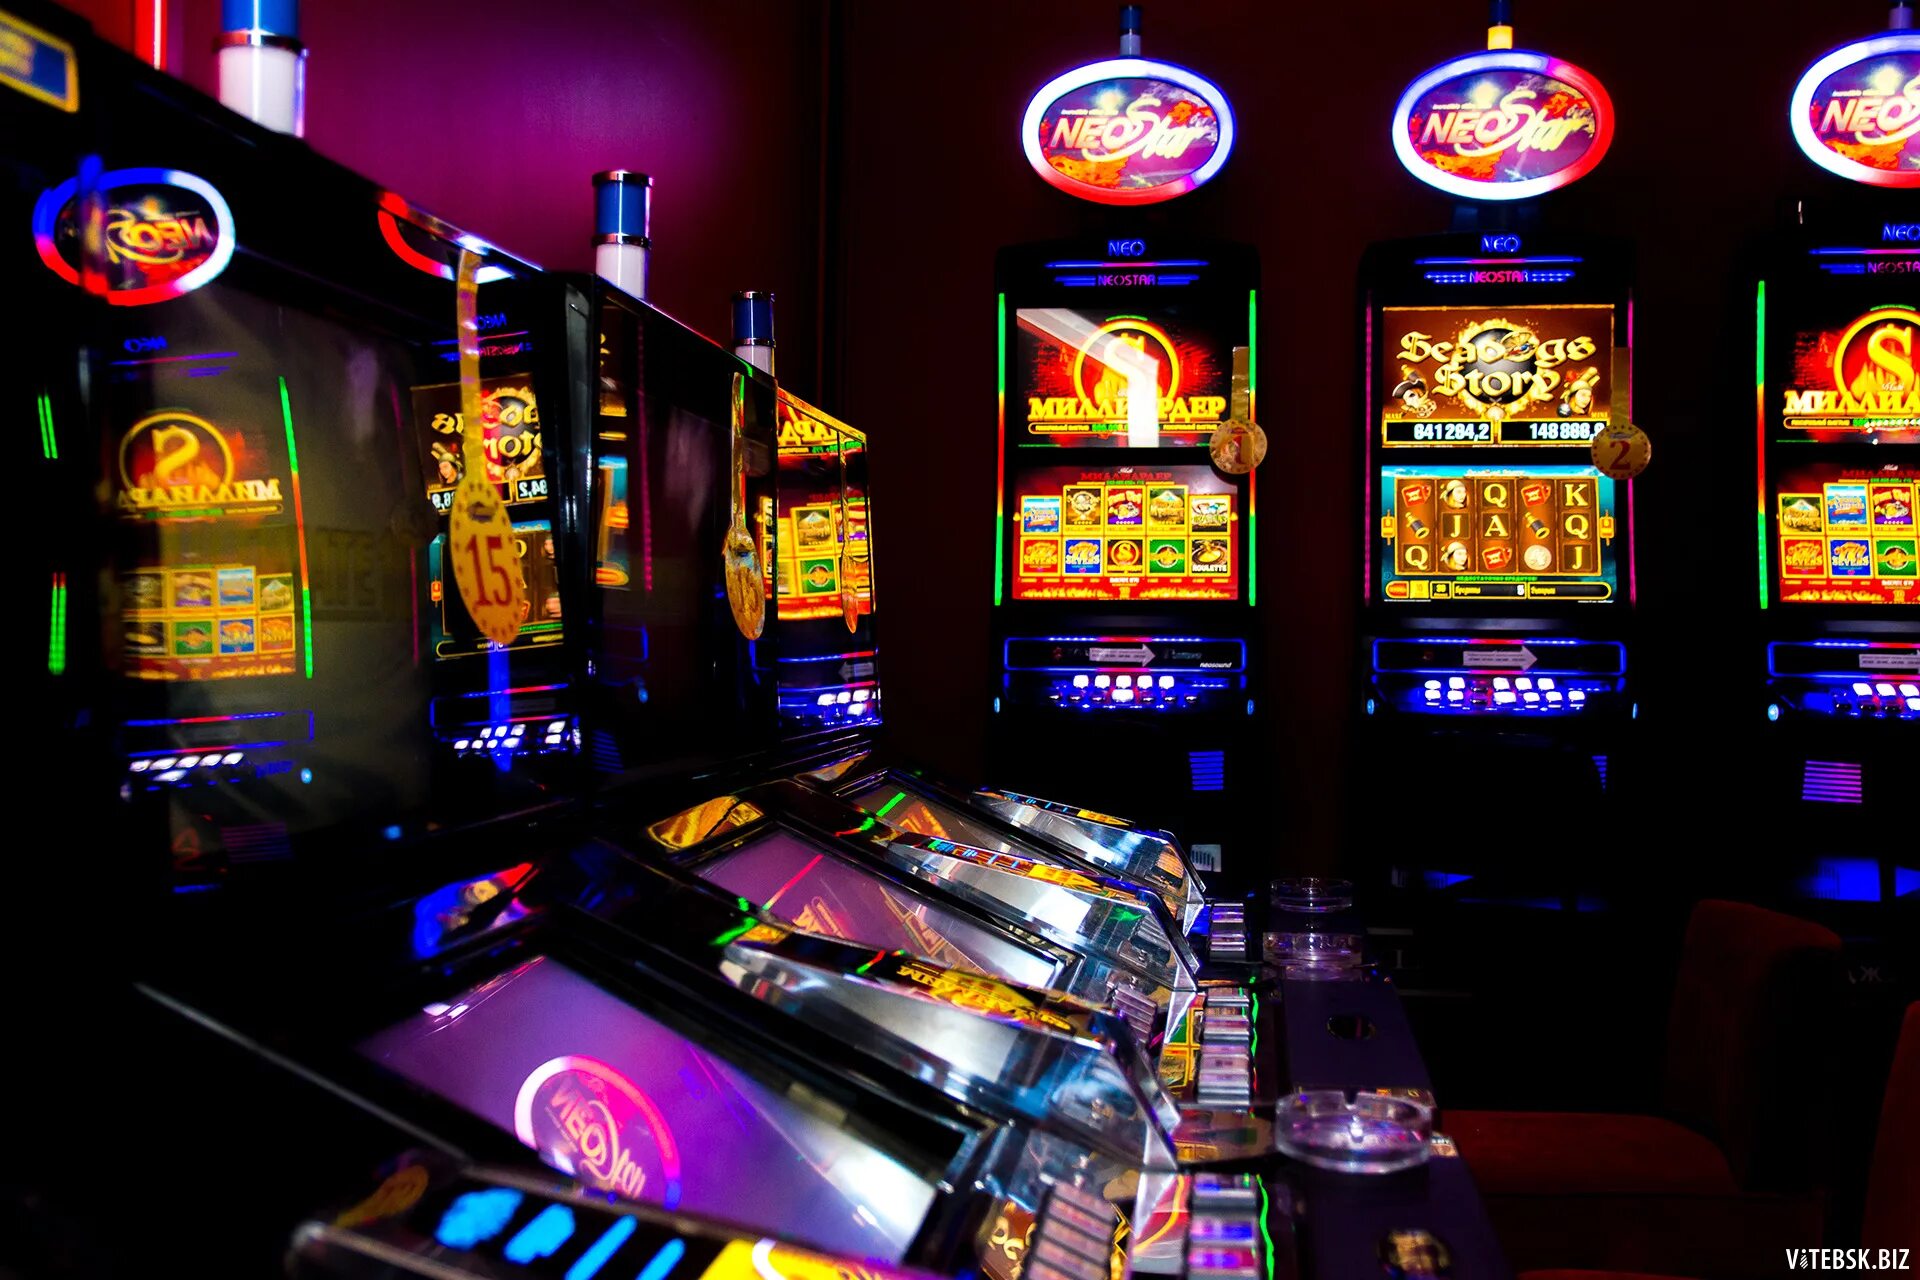 Игровой зал 777. Слотосфера игровые автоматы казино. Игровой зал 777 зал популярных игровых аппаратов. Азартные игровые автоматы гаминатор. Название игровых автоматов.